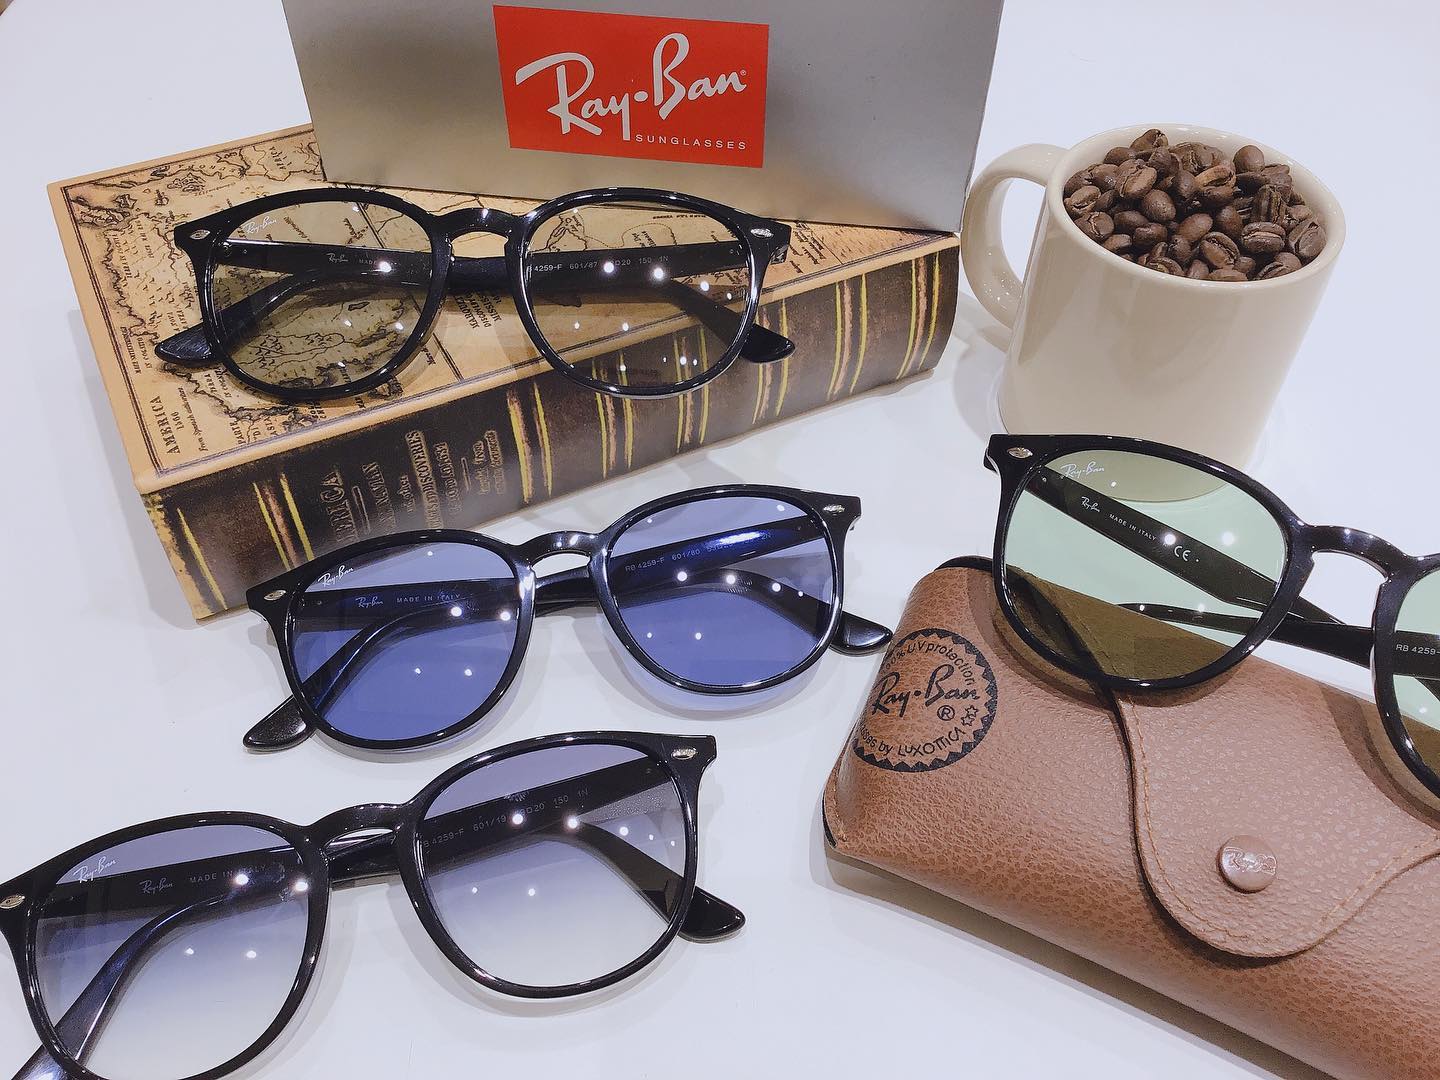 RayBan sunglasses品番:4259Fカラー:601/87 601/19 601/2 601/80レイバンの人気のライトカラーサングラス 揃ってます♬マスク着用時でも目が透けて見えるので重い印象にならず、コーディネートに取り入れやすいアイテムです♬是非お試しください?#rayban  ...